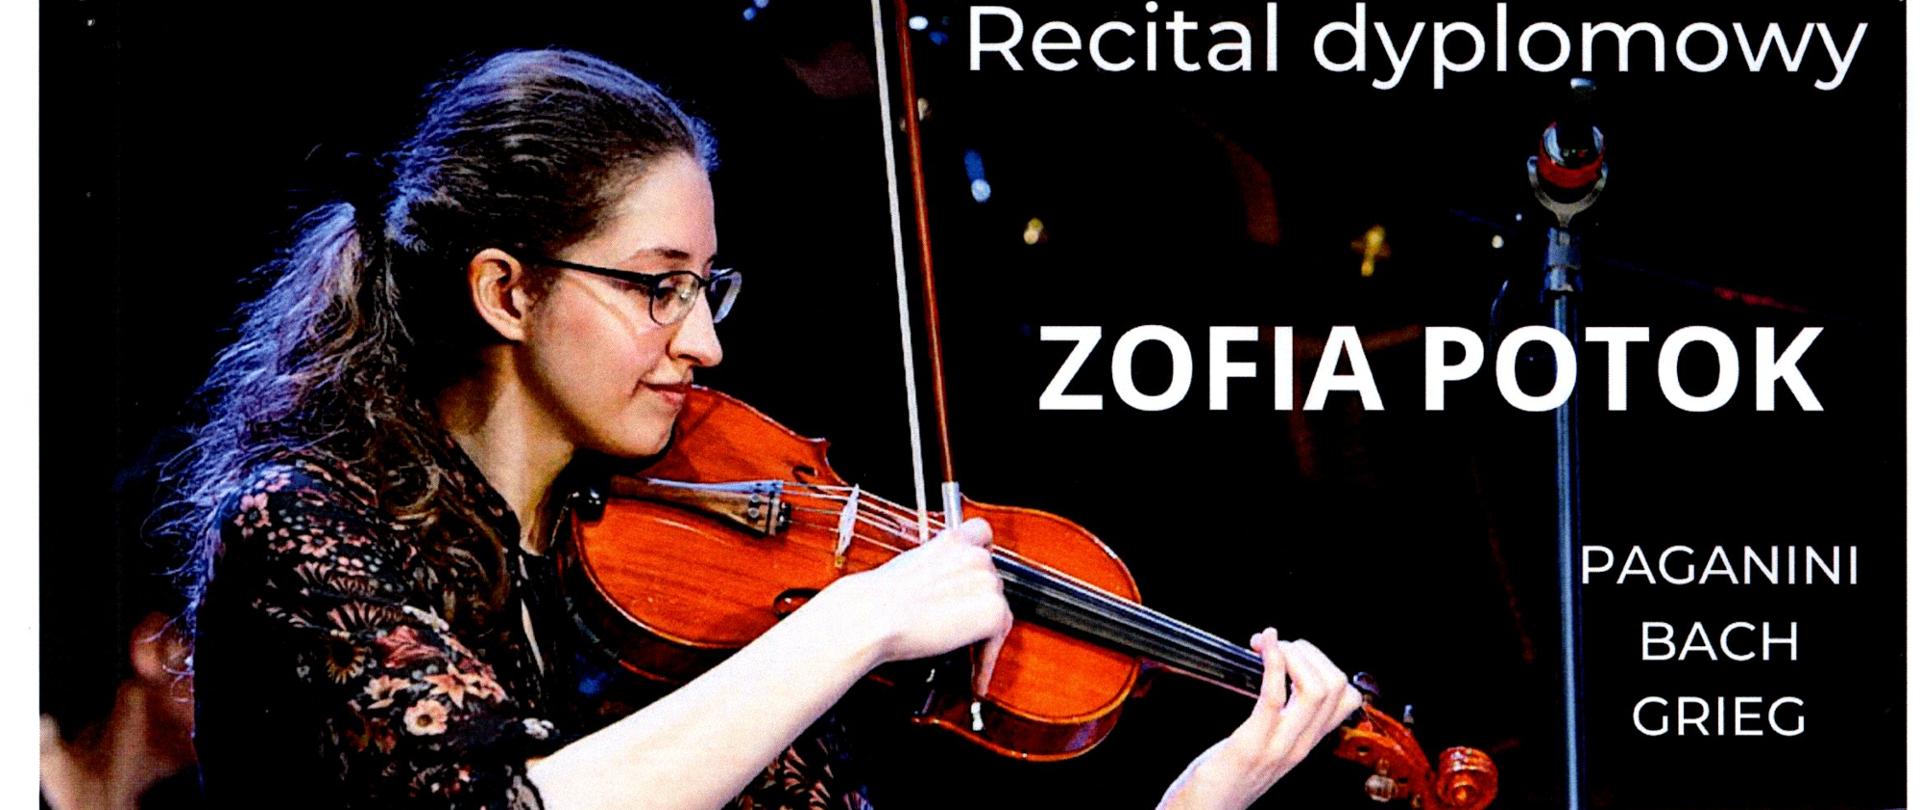 zdjęcie skrzypaczki Zofii Potok z instrumentem i informacjami o recitalu dyplomowym